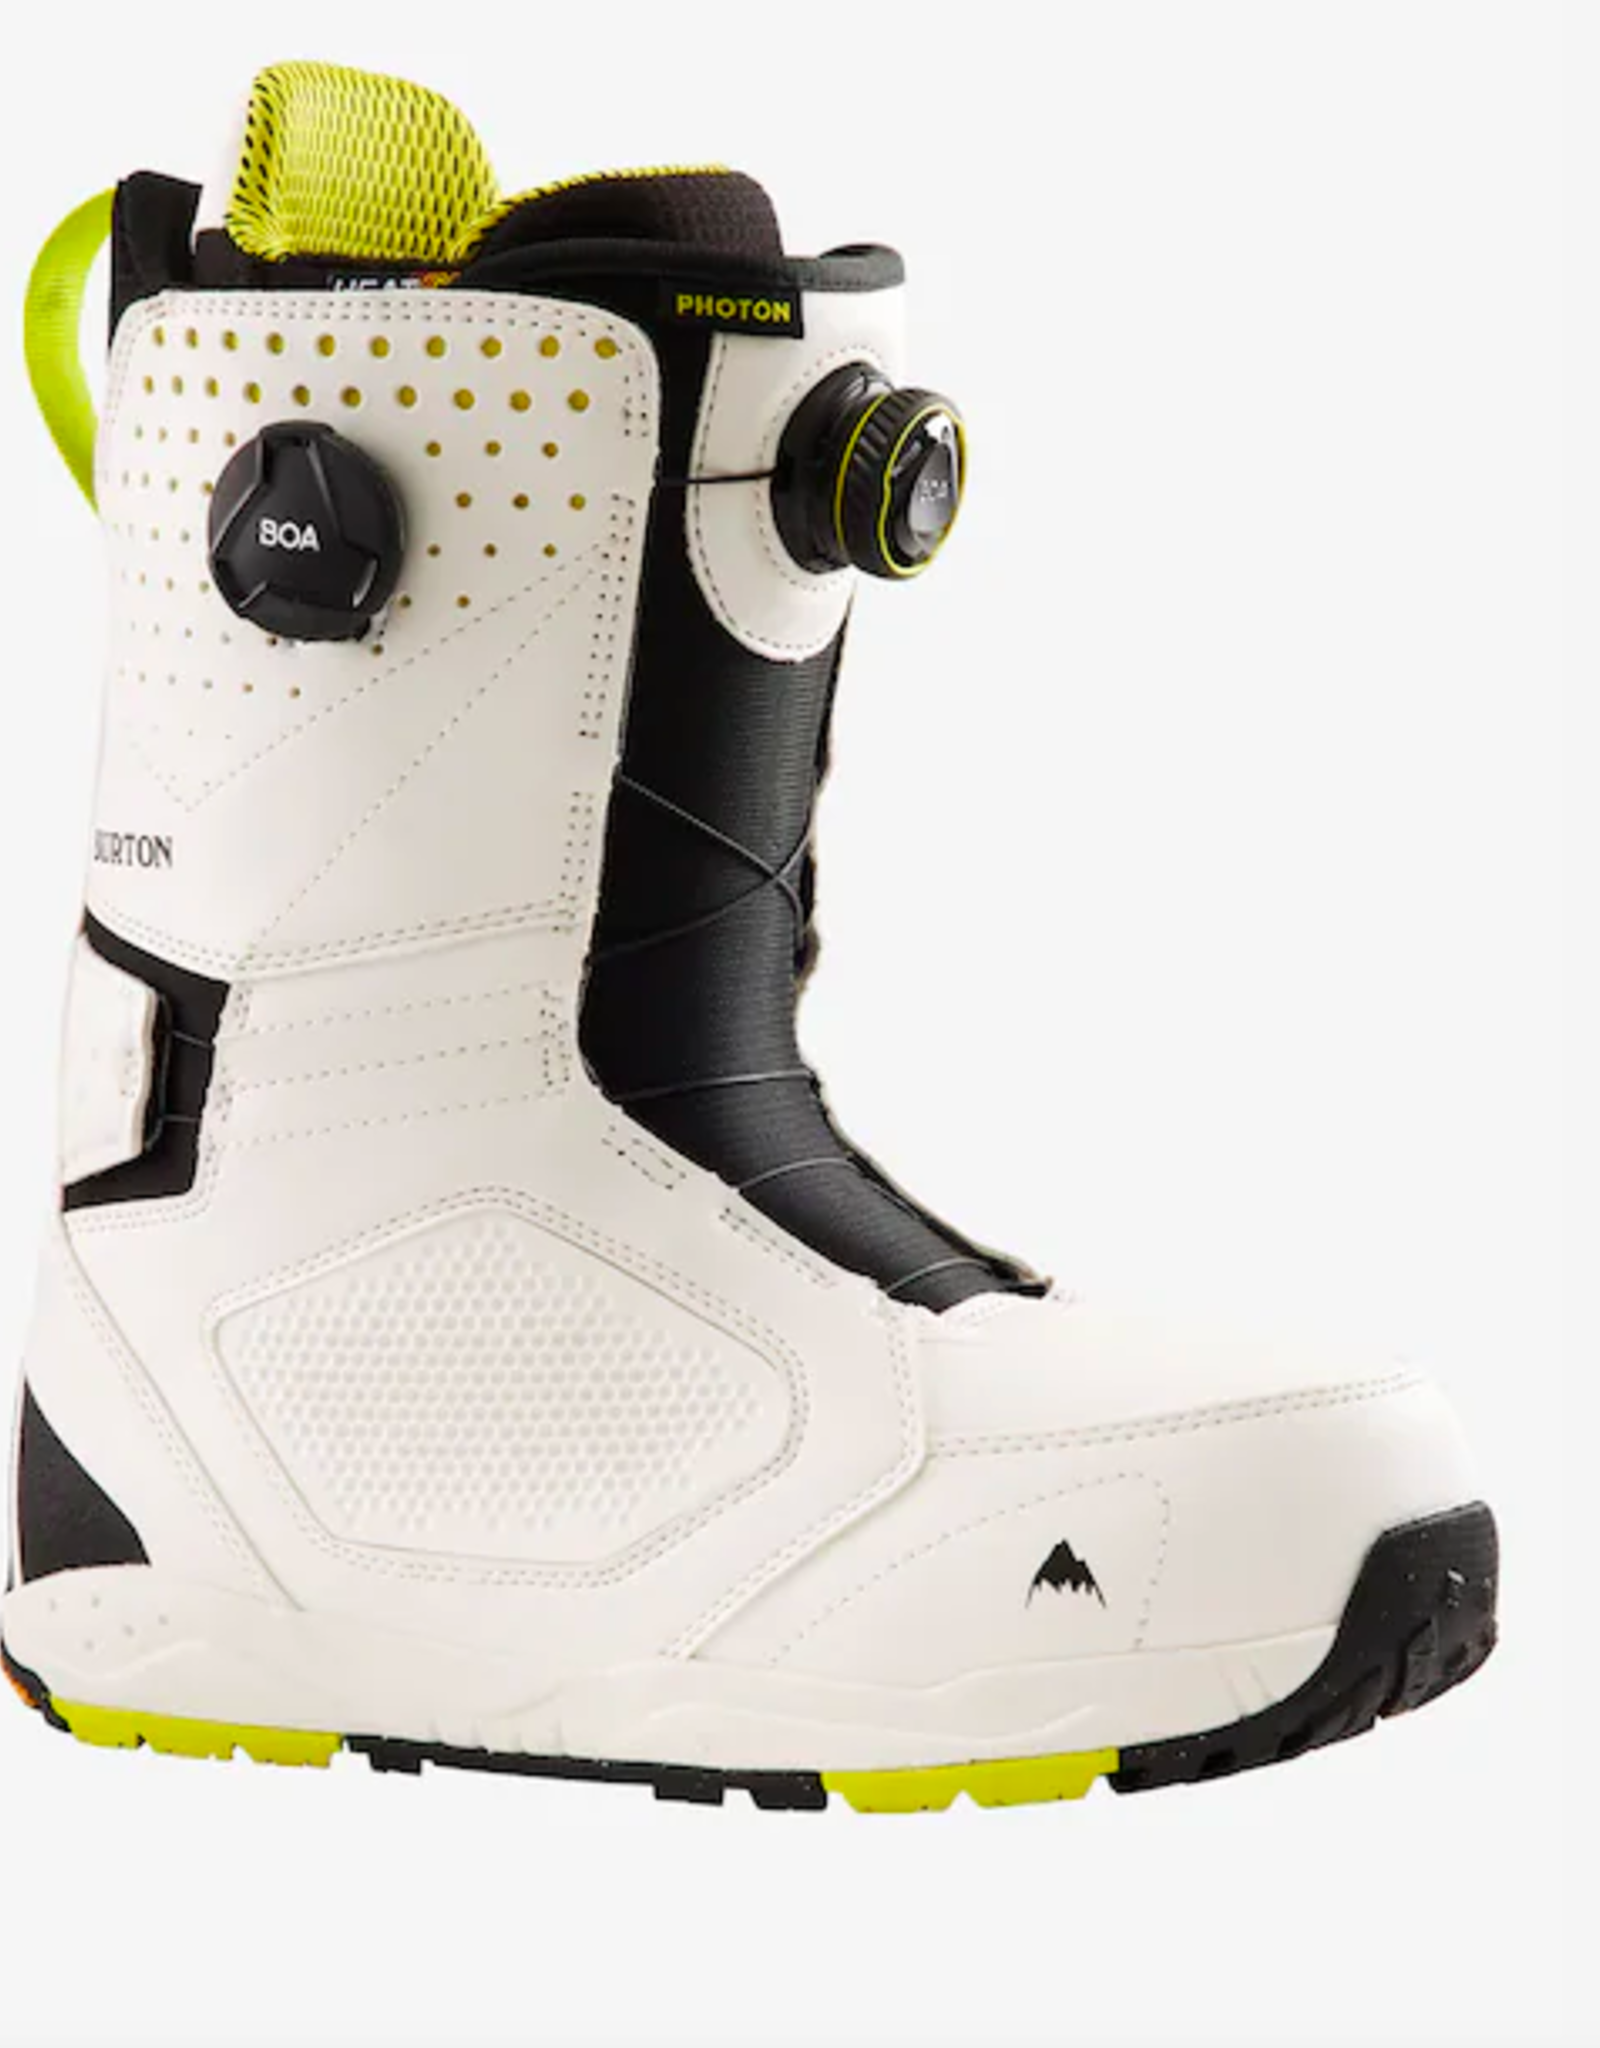 BURTON Burton Men's Photon Boa Snowboard Boots Stout Yellow/White 2022